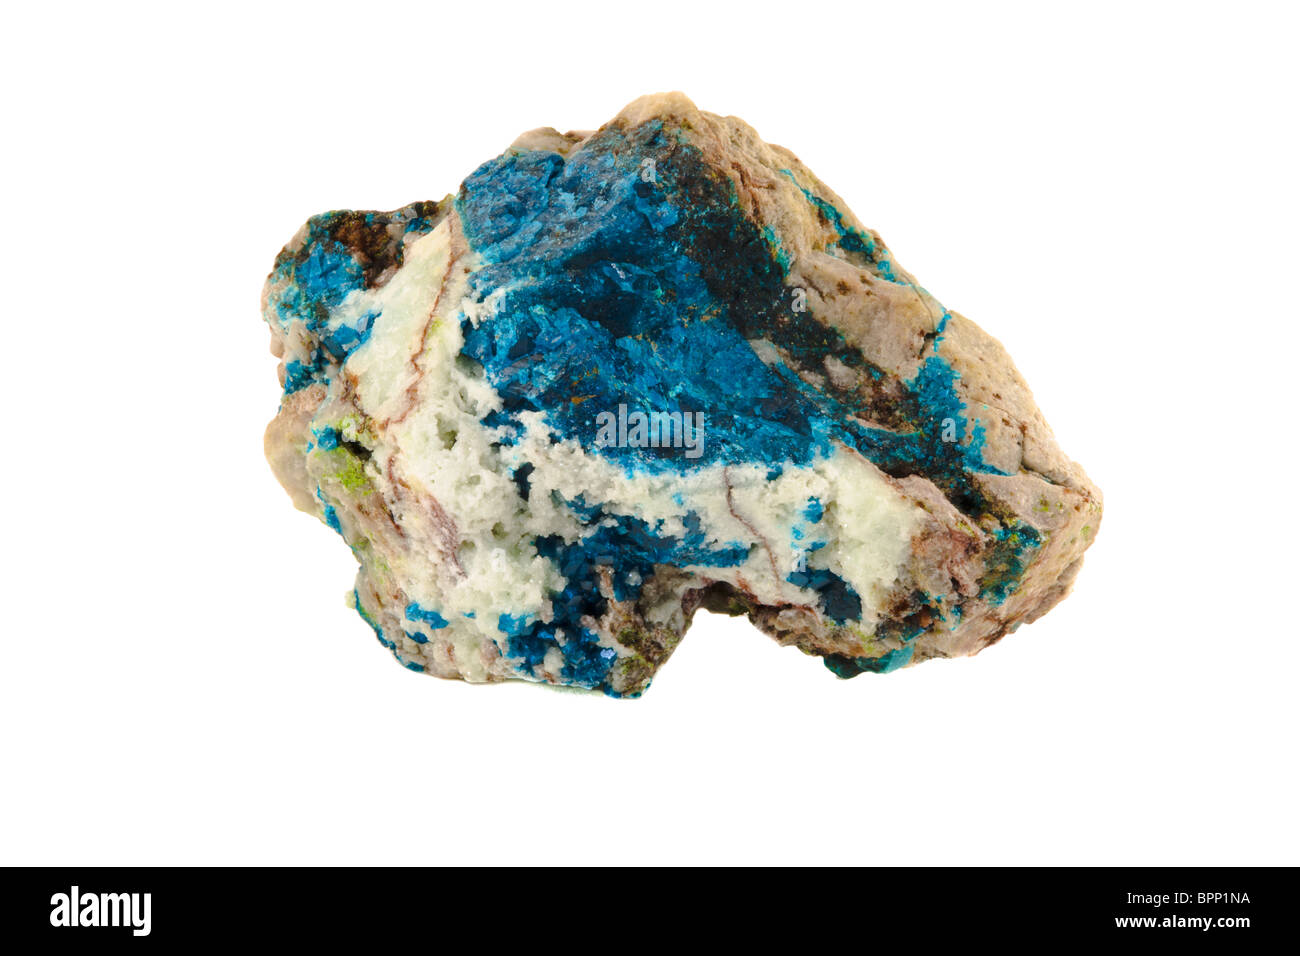 Jasper Bleu Azurite Malachite apatite minéral cristal de roche en pierre trouvés dans les "Rocky Mountains" Banque D'Images